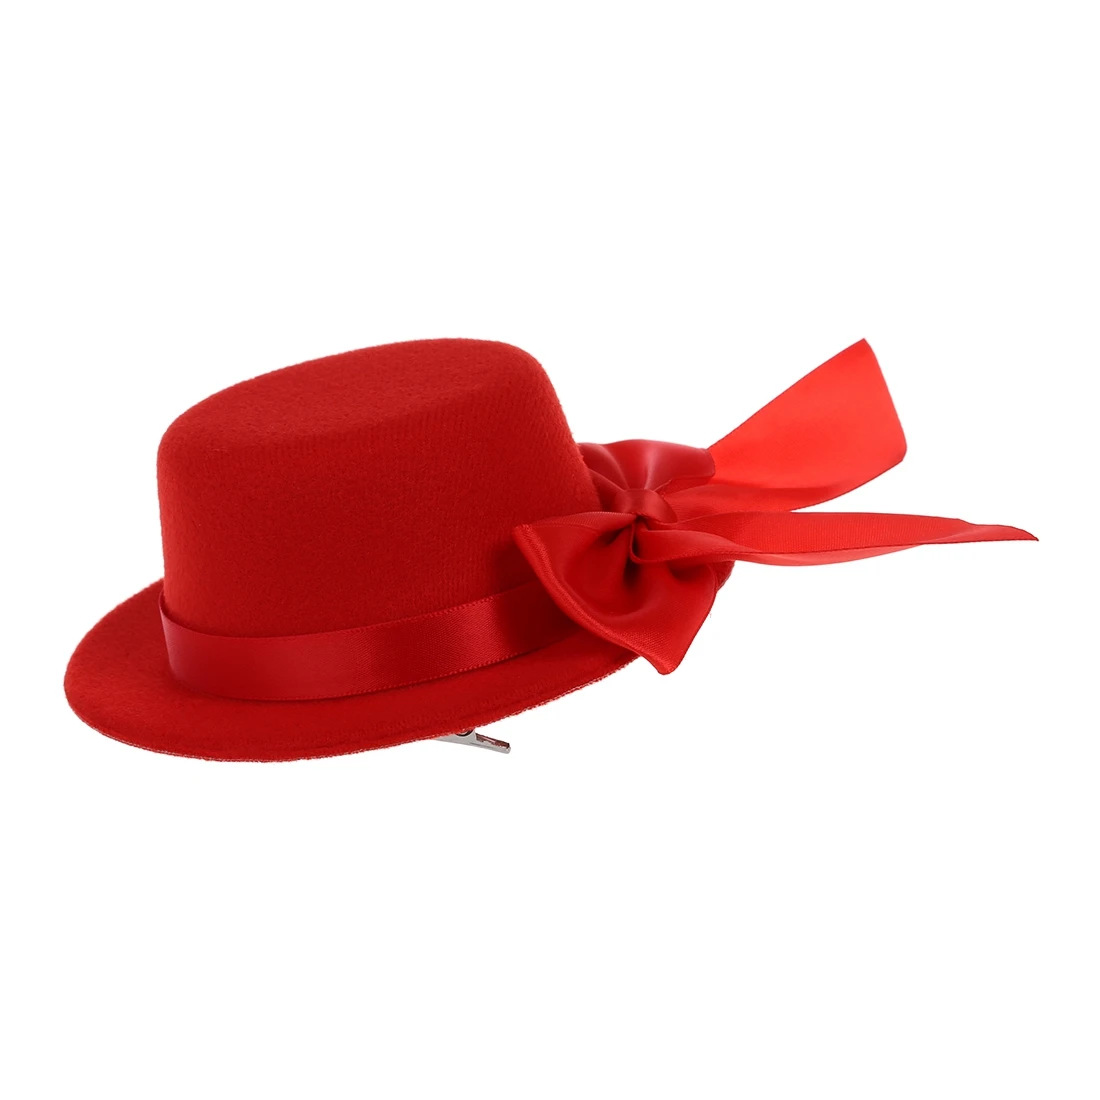 Дамы Мини Топ шляпа чародей Бурлеск Millinery w/Bowknot-красный